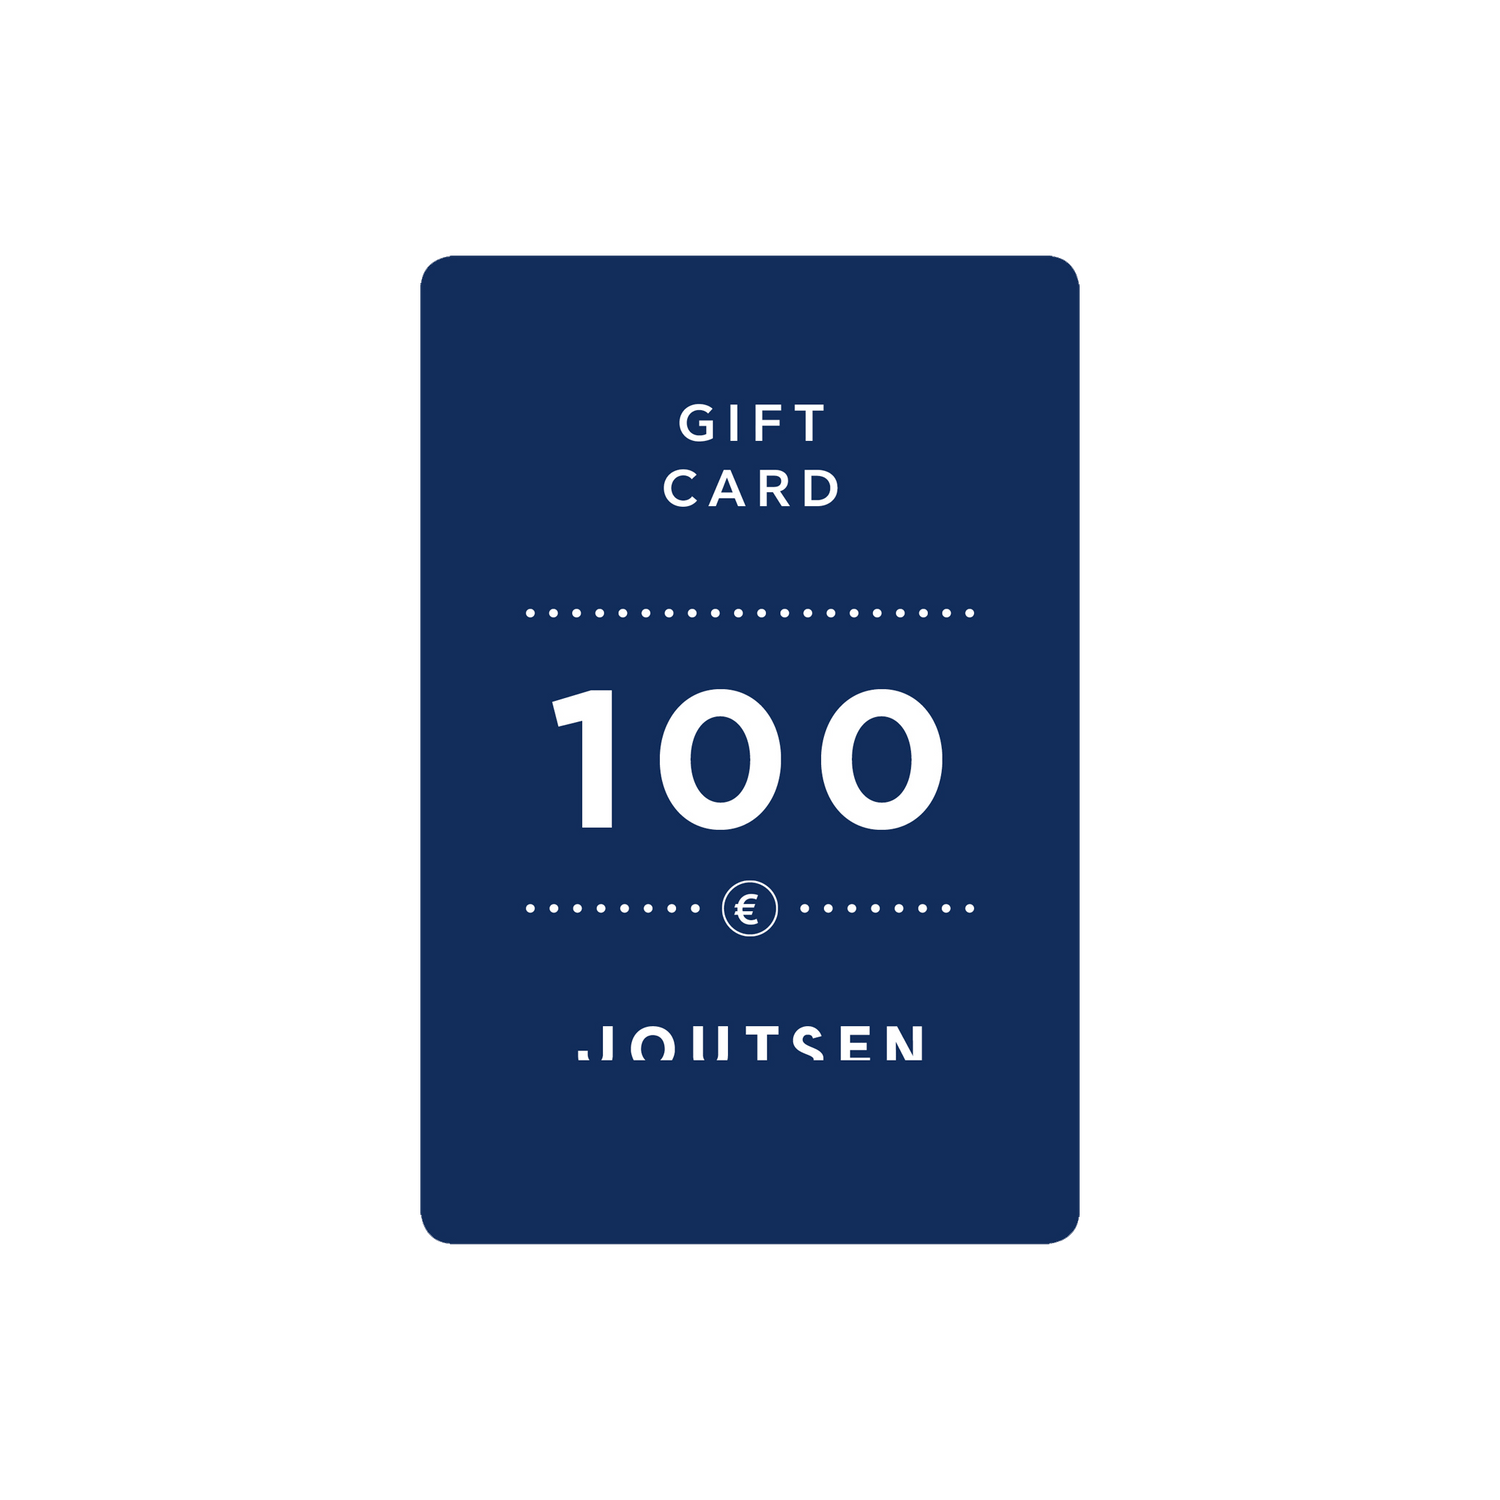 Gift Card - Joutsen - 100 €